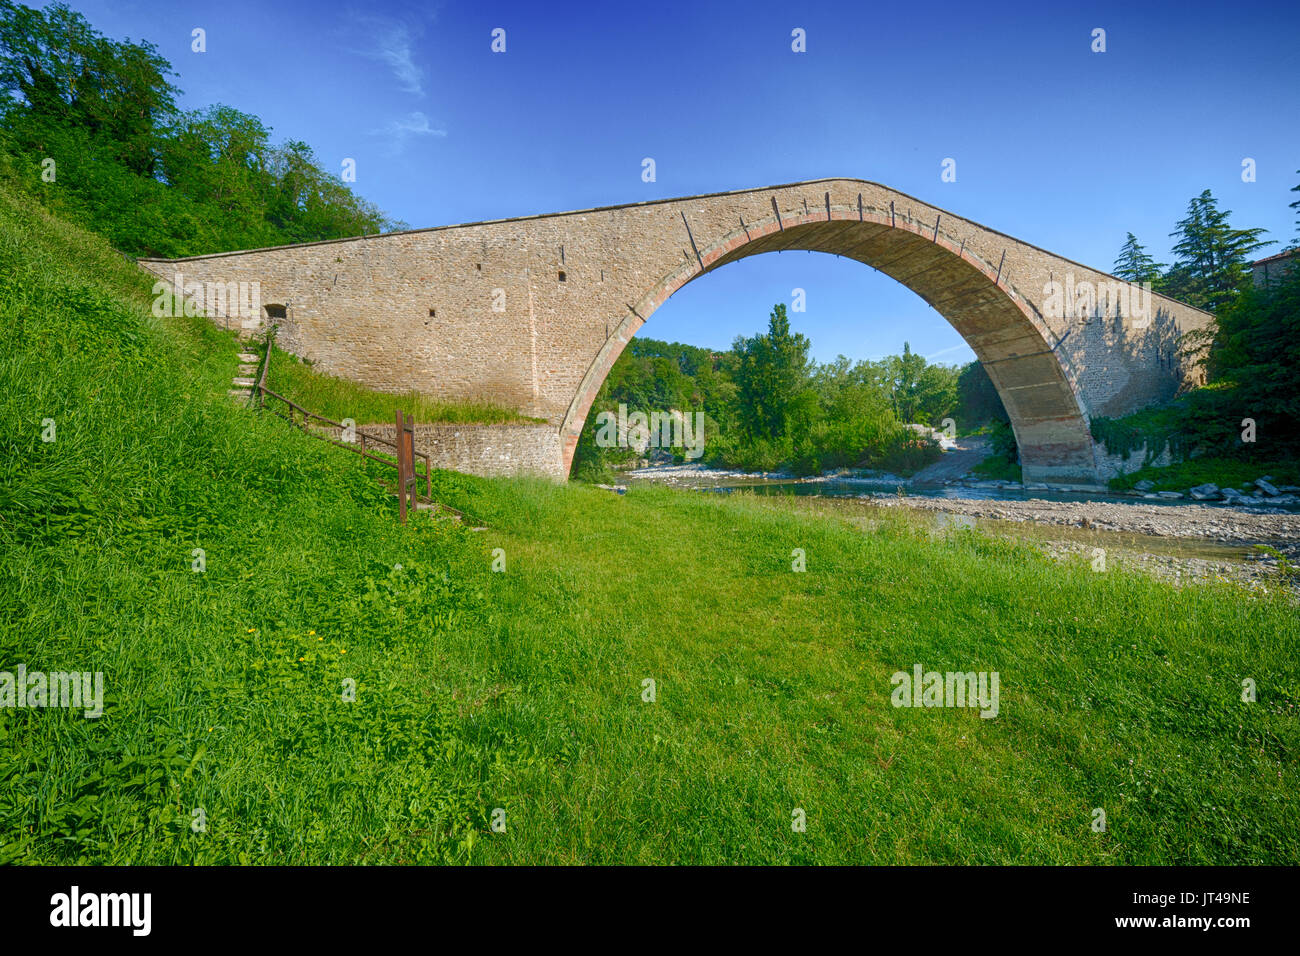 Pont Alidosi, chef d'œuvre de la renaissance du génie civil avec âne retour structure, l'une des merveilles de l'Italie Banque D'Images